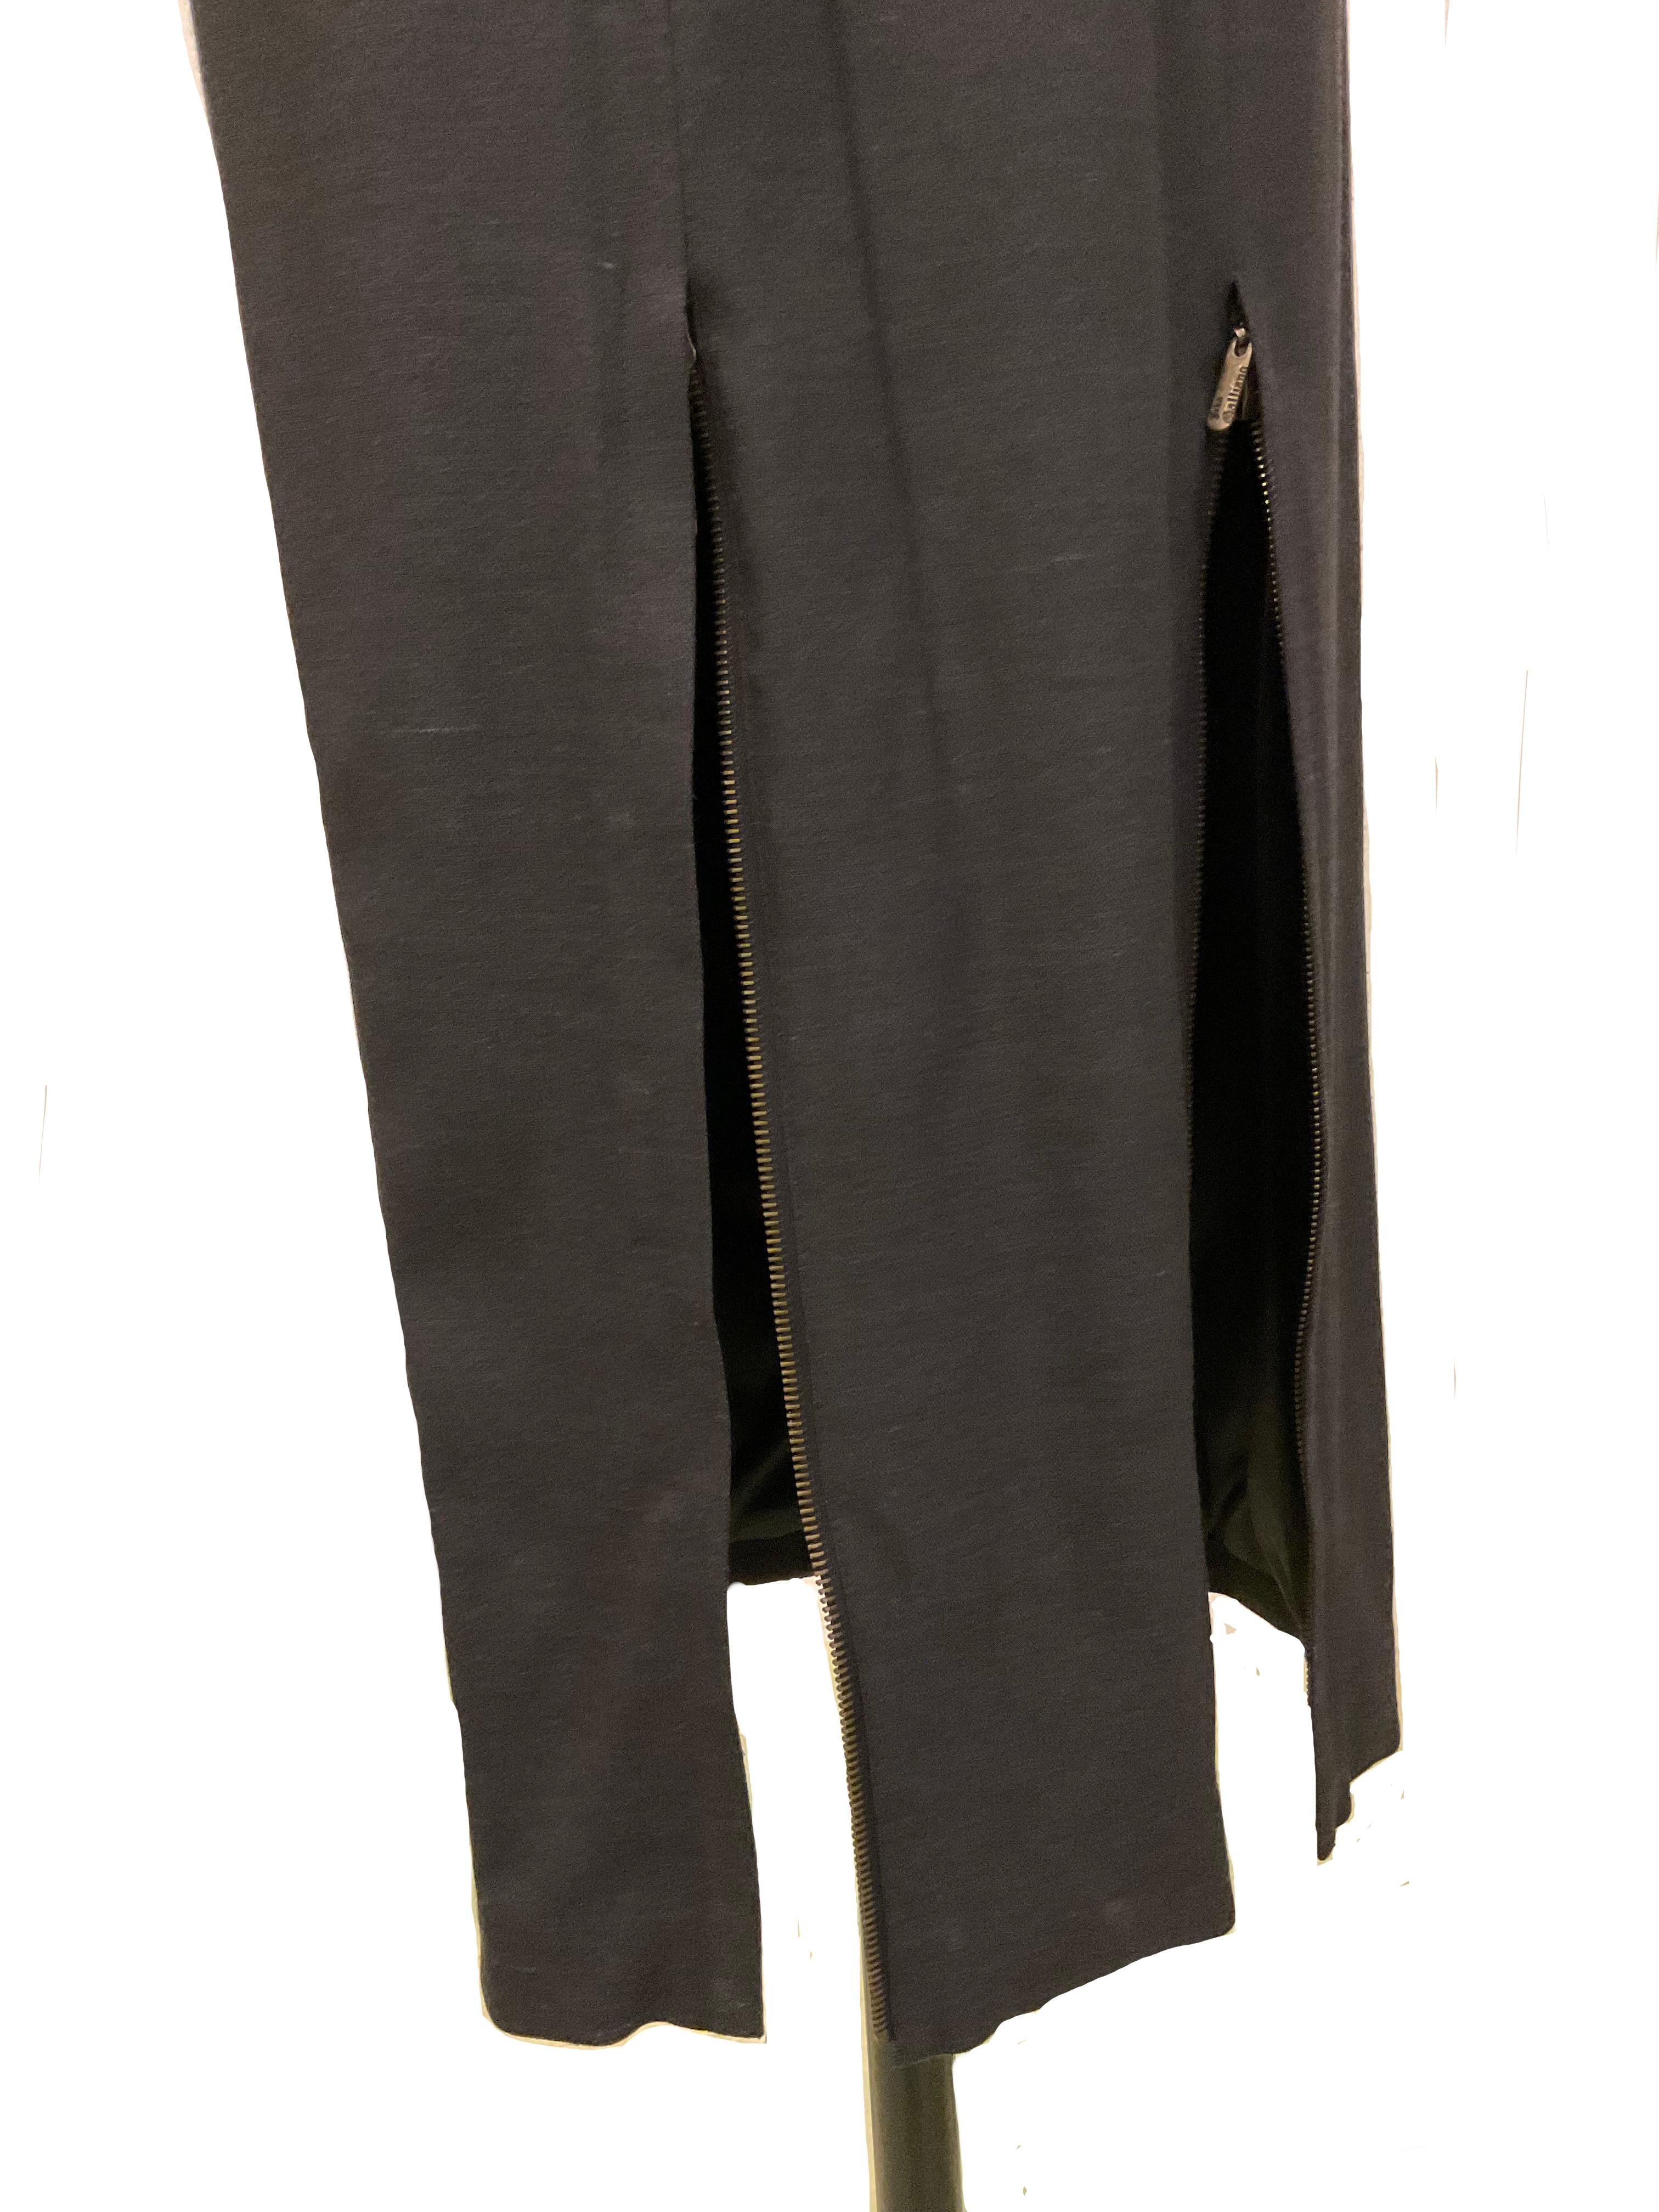 Women's JOHN GALLIANO abito grigio a sottoveste midi con spalline in camoscio FW 2004 For Sale